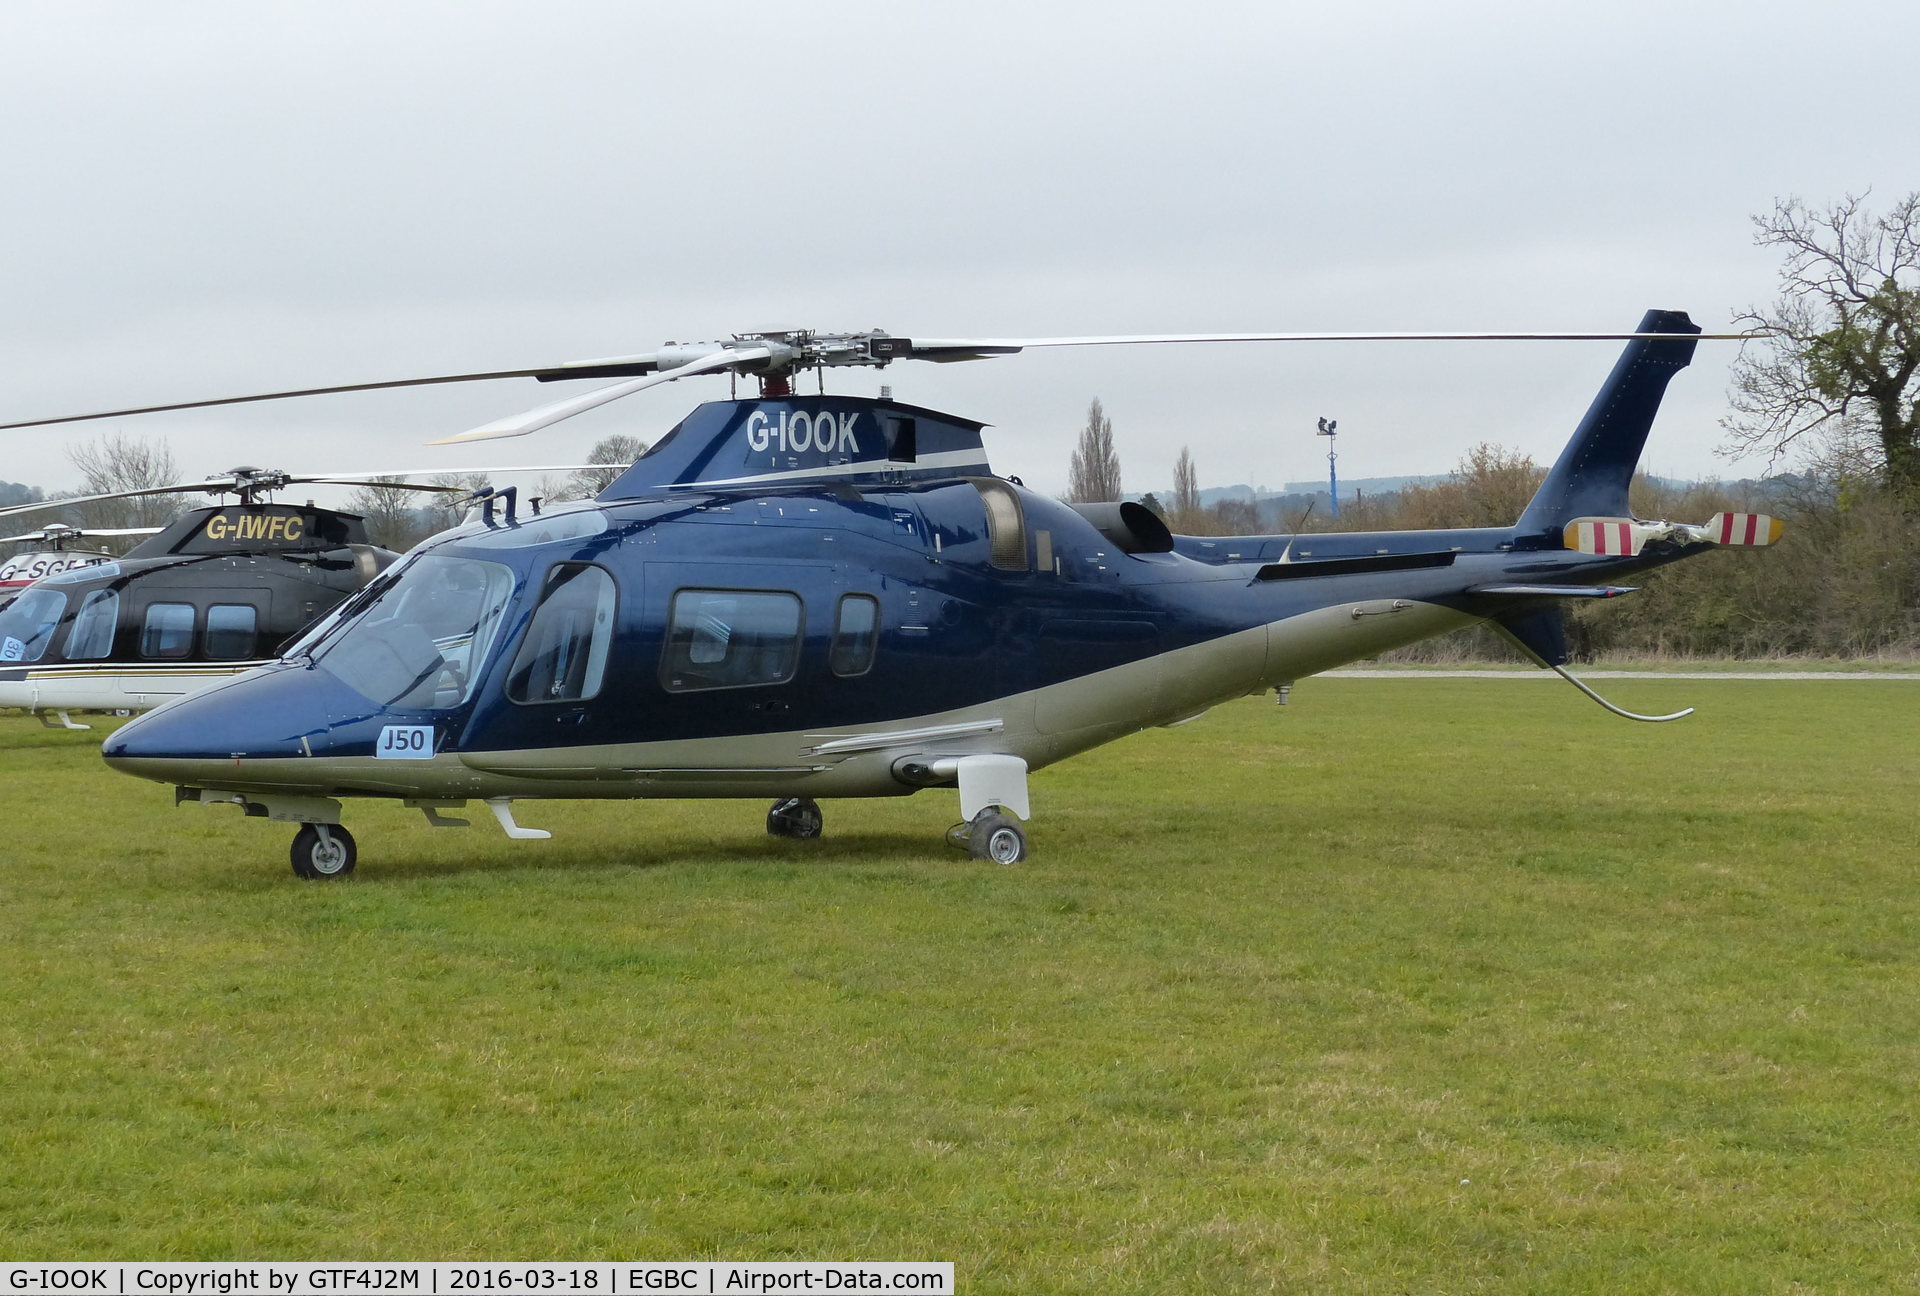 G-IOOK, 2007 Agusta A-109E Power C/N 11692, G-IOOK at Cheltenham Racecourse 18.3.16